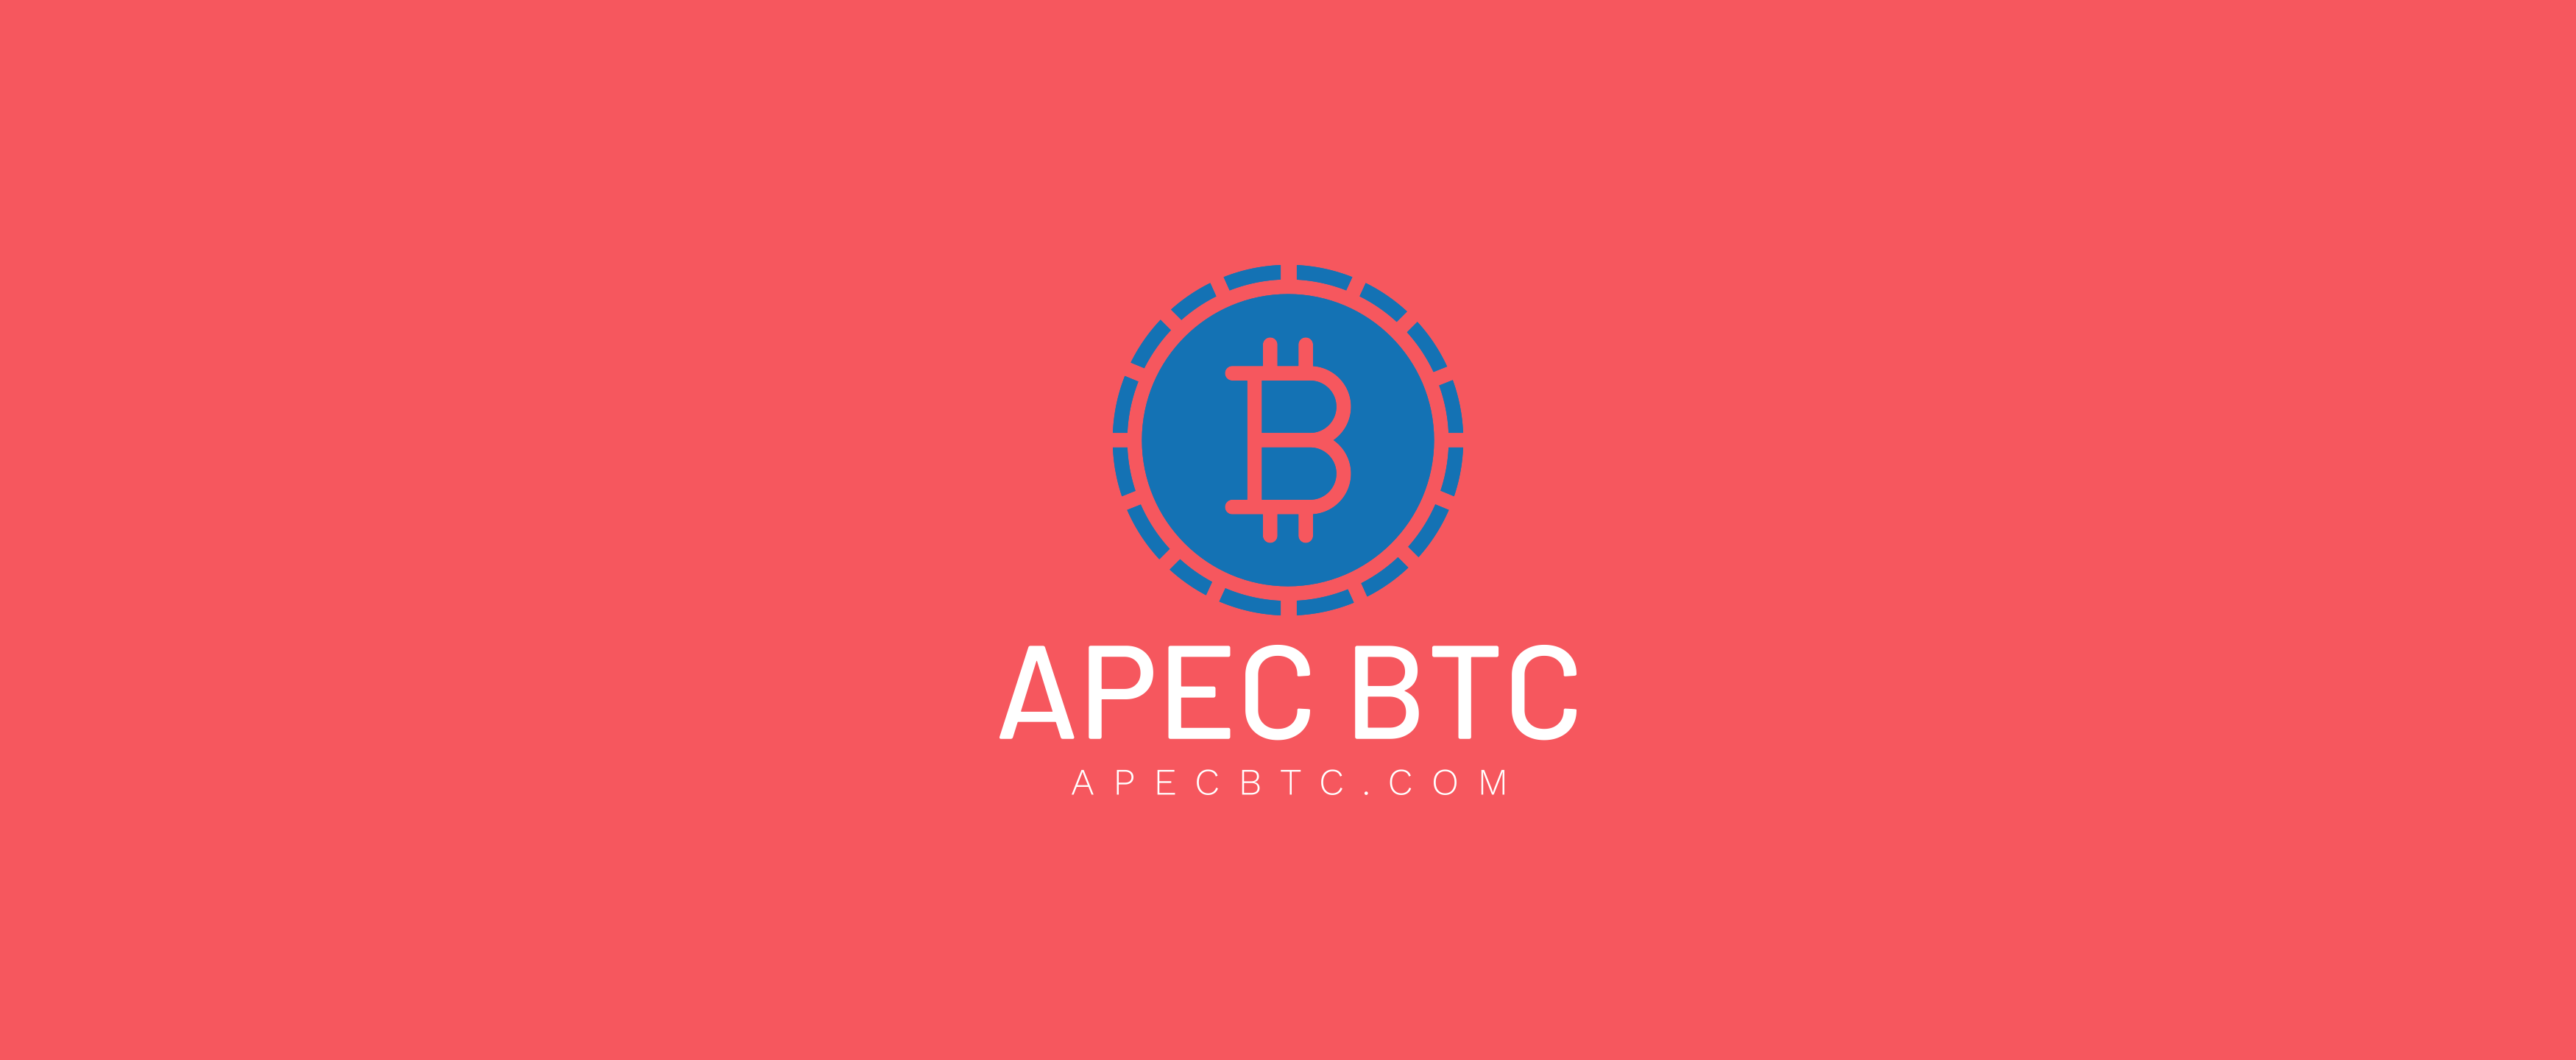 APEC BTC